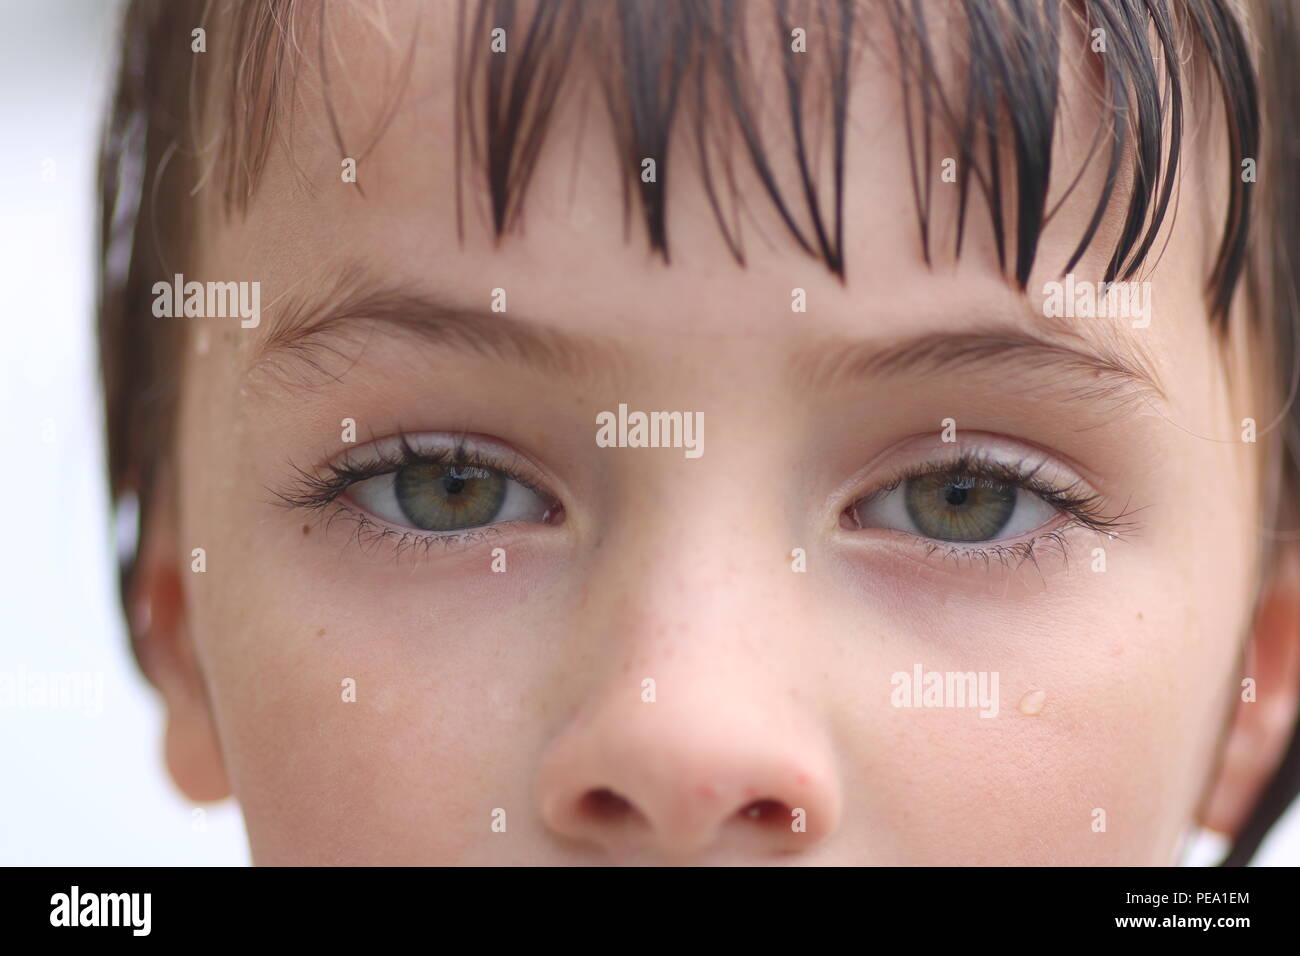 Plan Macro sur les yeux d'un enfant aux yeux verts avec un regard dans ses yeux fatigués Banque D'Images